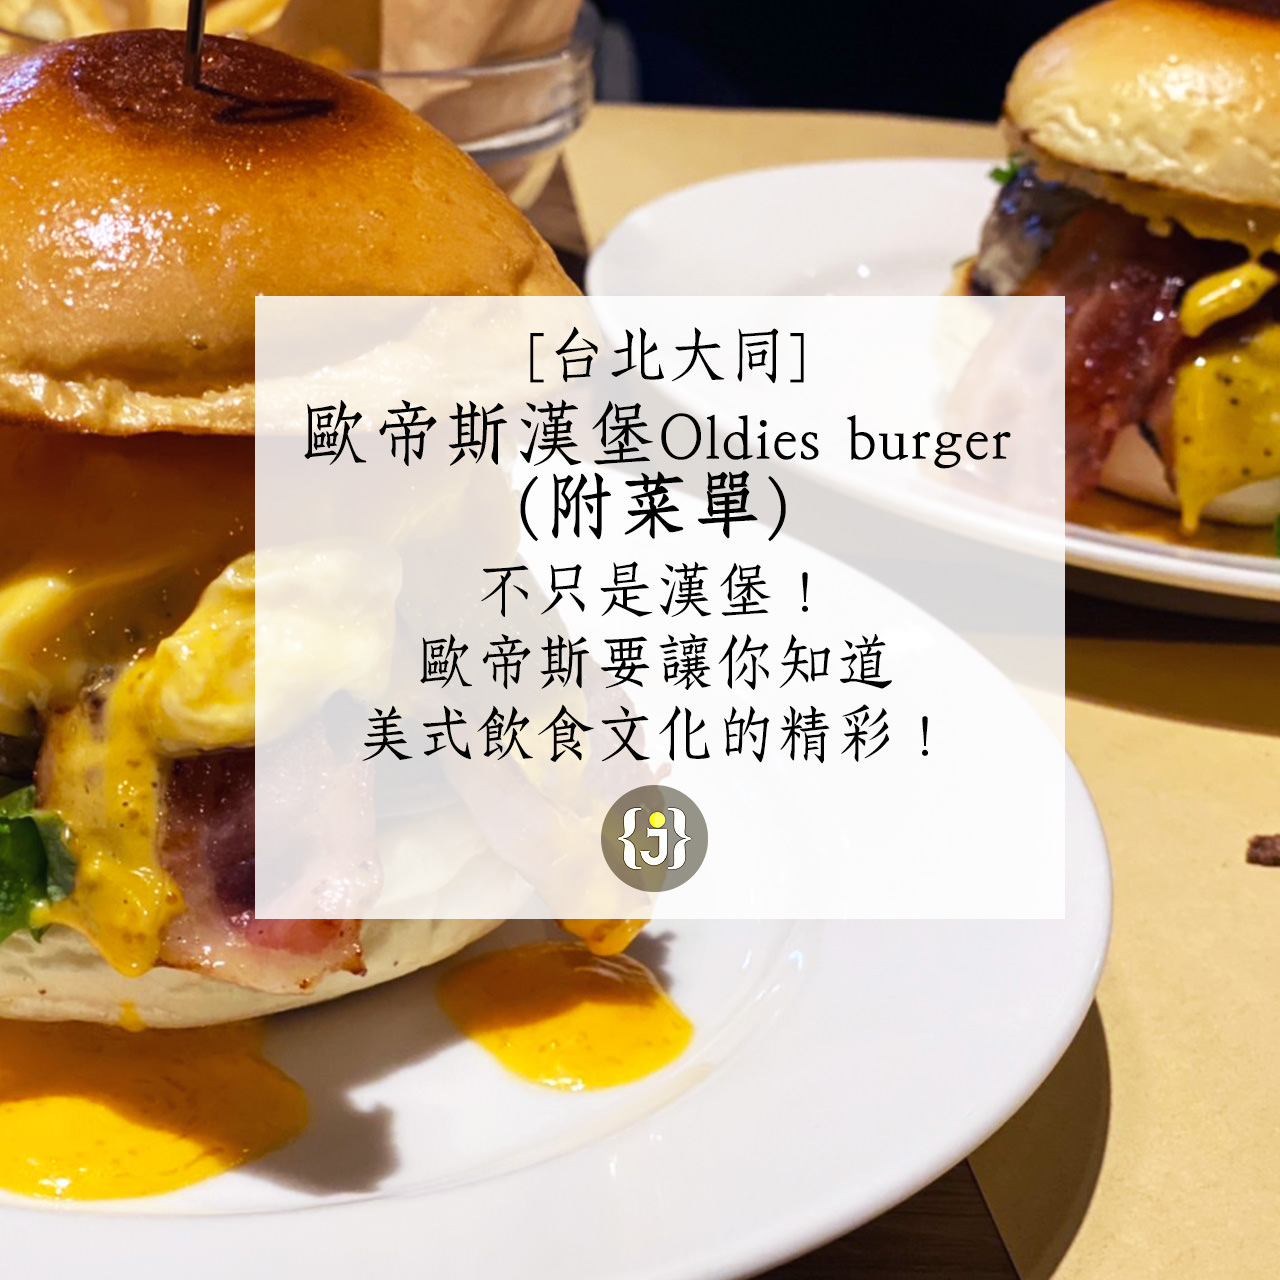 【台北大同】歐帝斯漢堡Oldies burger 不只是漢堡！歐帝斯讓你知道美式飲食文化的精彩～美國白宮專員、大咖明星最愛的餐廳